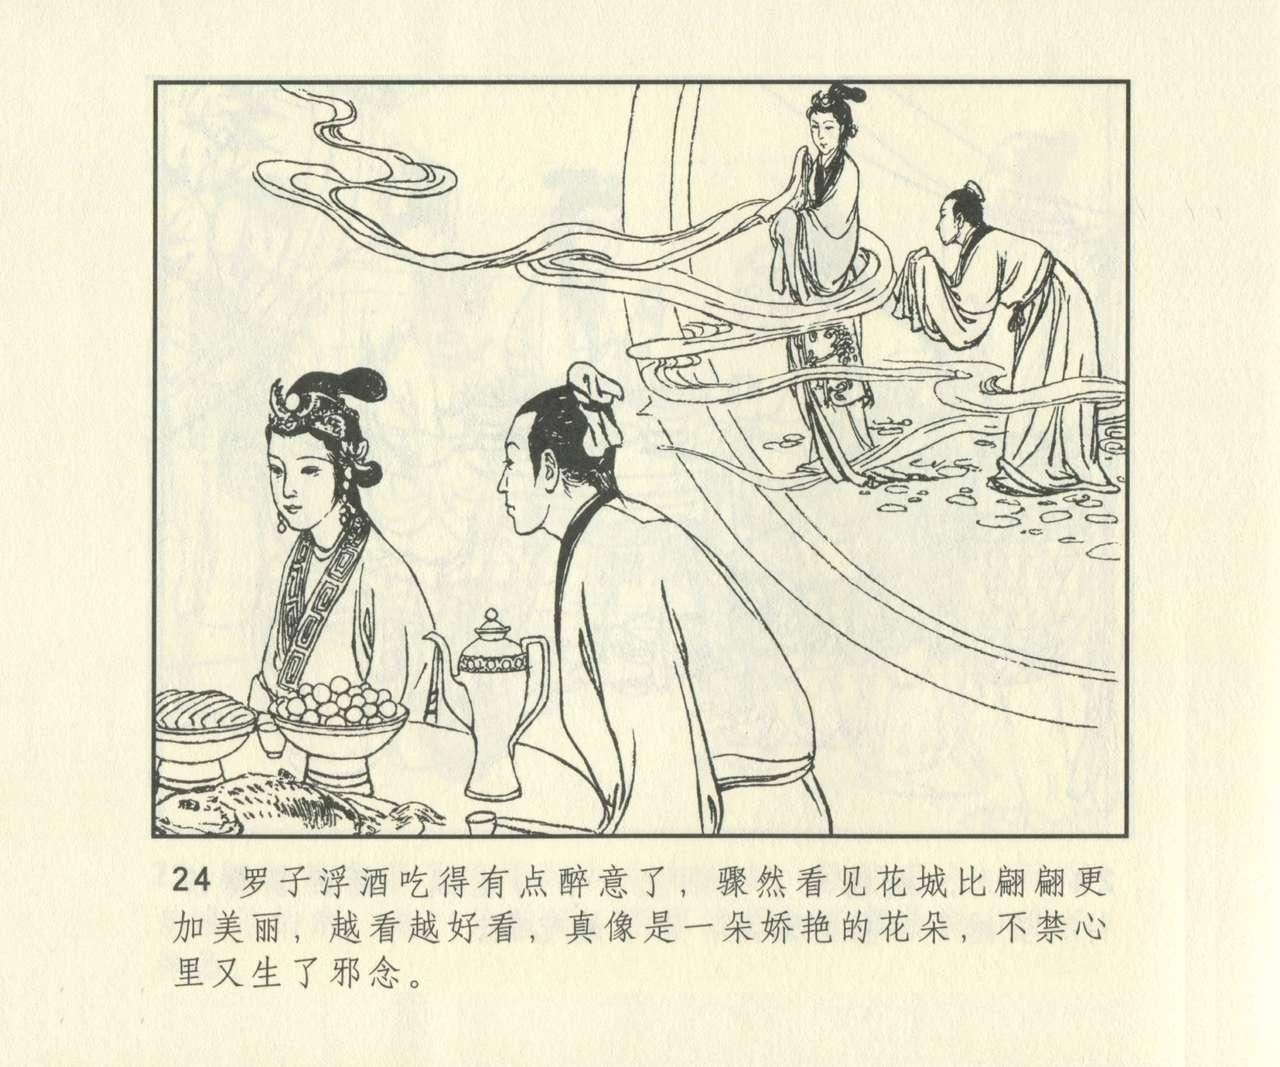 聊斋志异 张玮等绘 天津人民美术出版社 卷二十一 ~ 三十 640